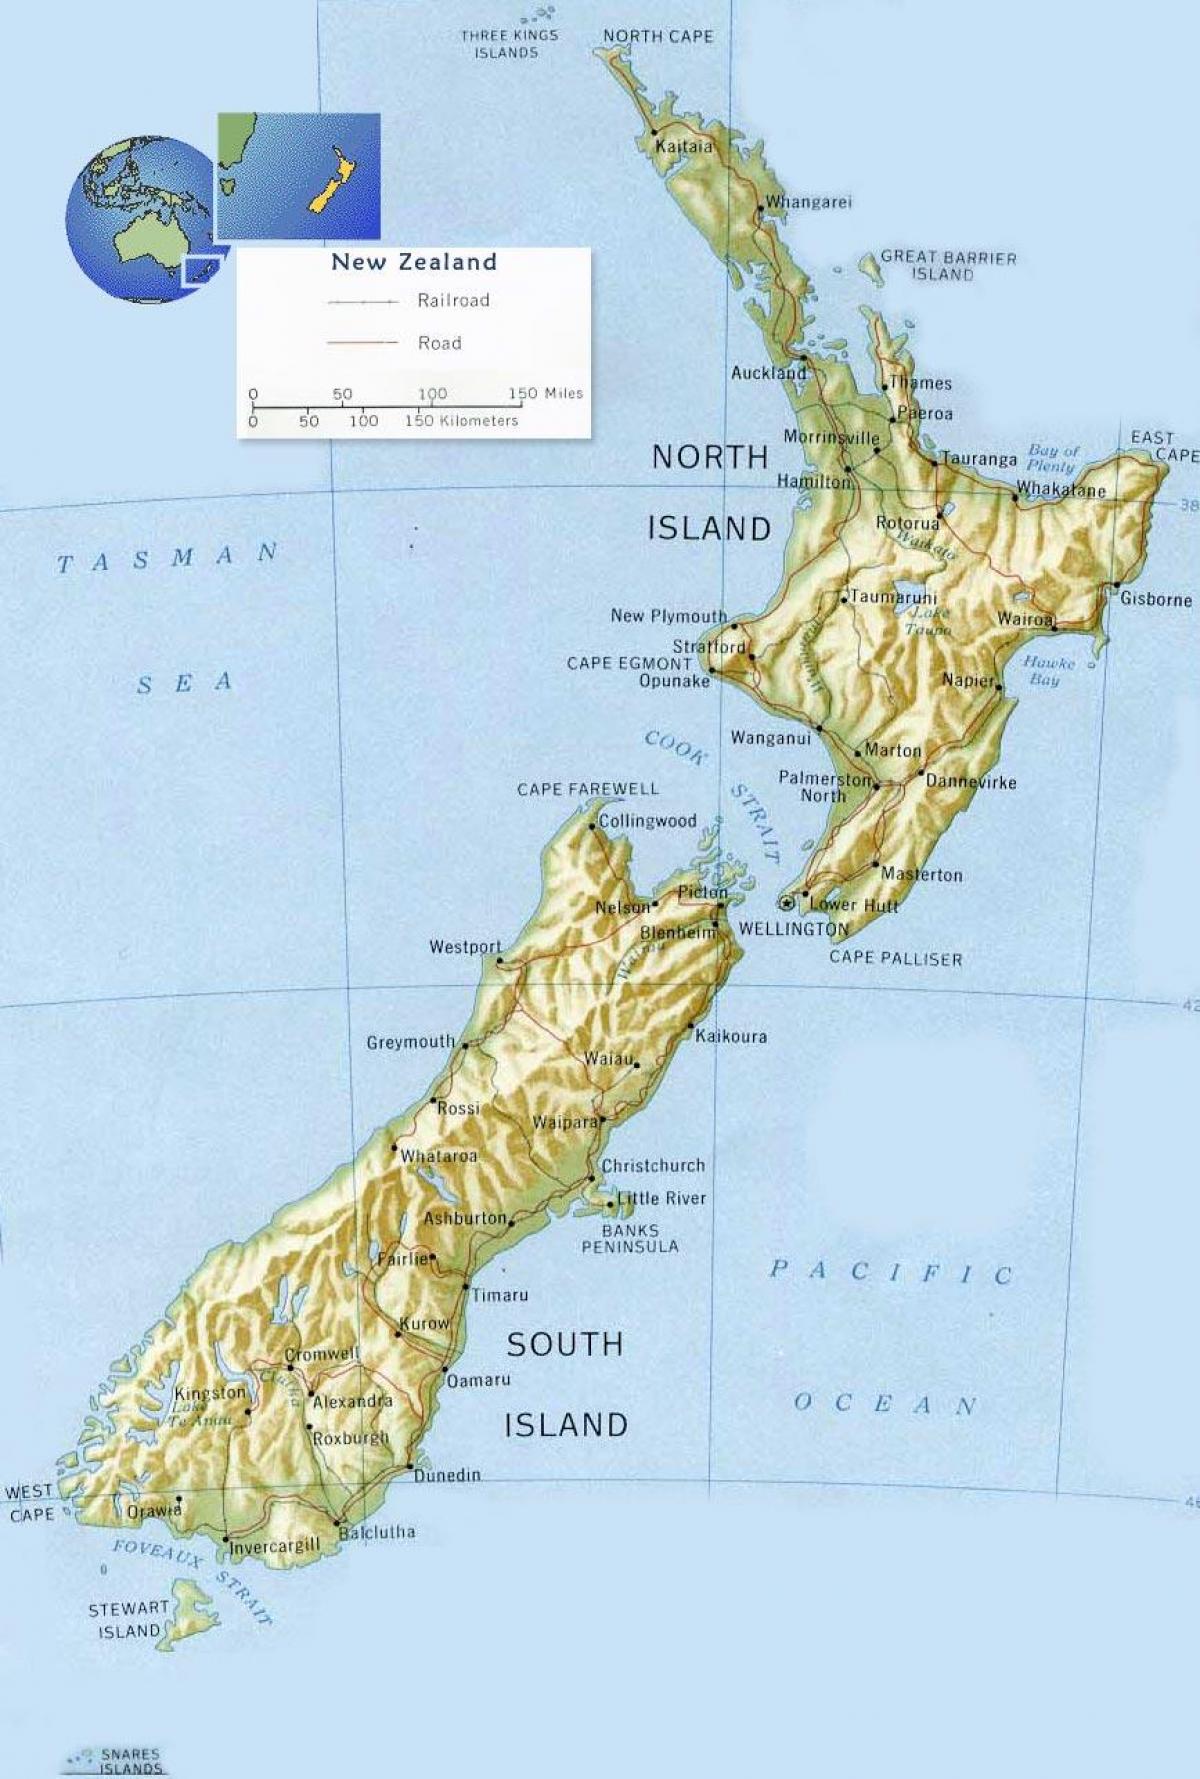 ویلنگٹن ، نیوزی لینڈ کے نقشے پر